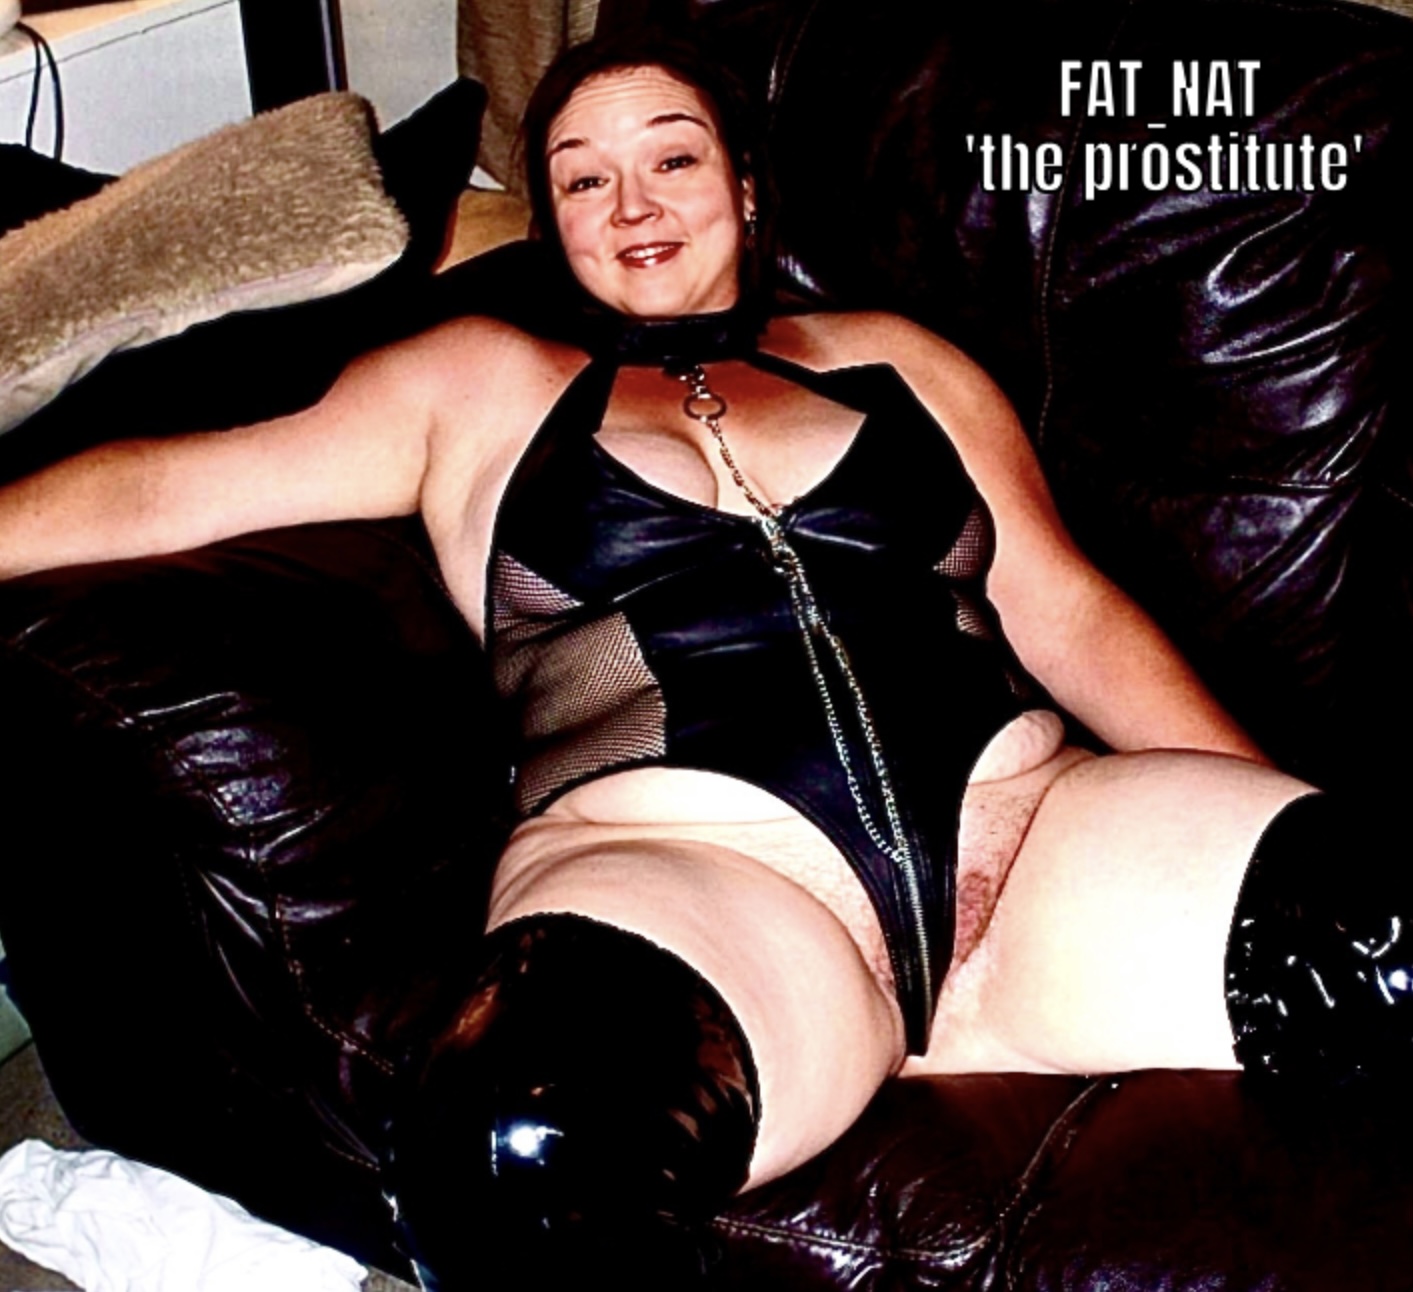 NatFour = FAT_NAT